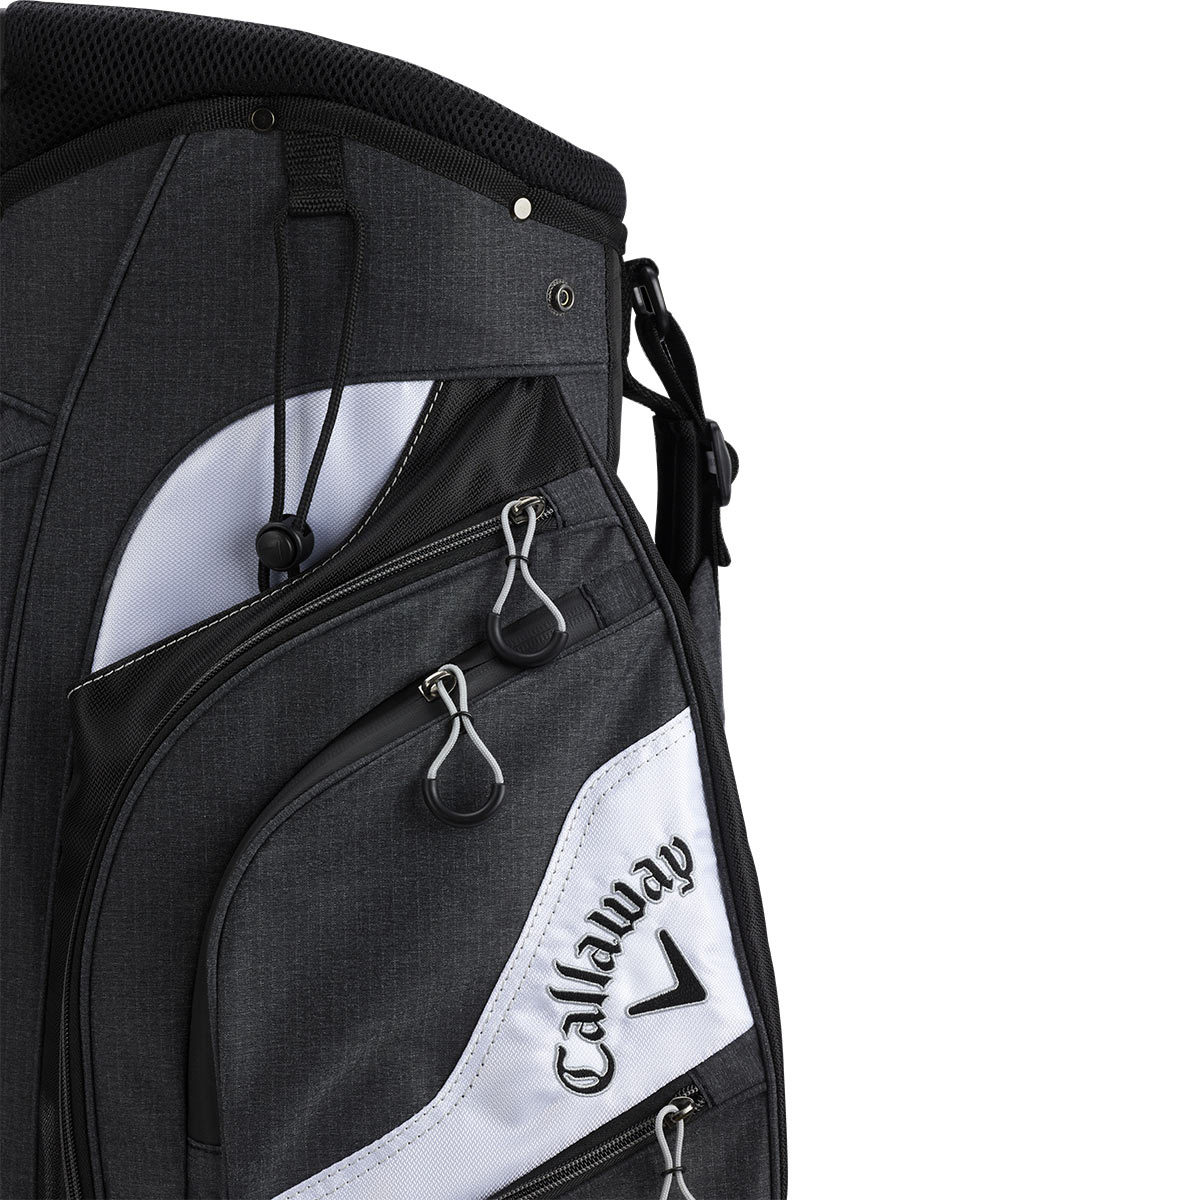 Callaway Premium Cart Bag in Black and Grey